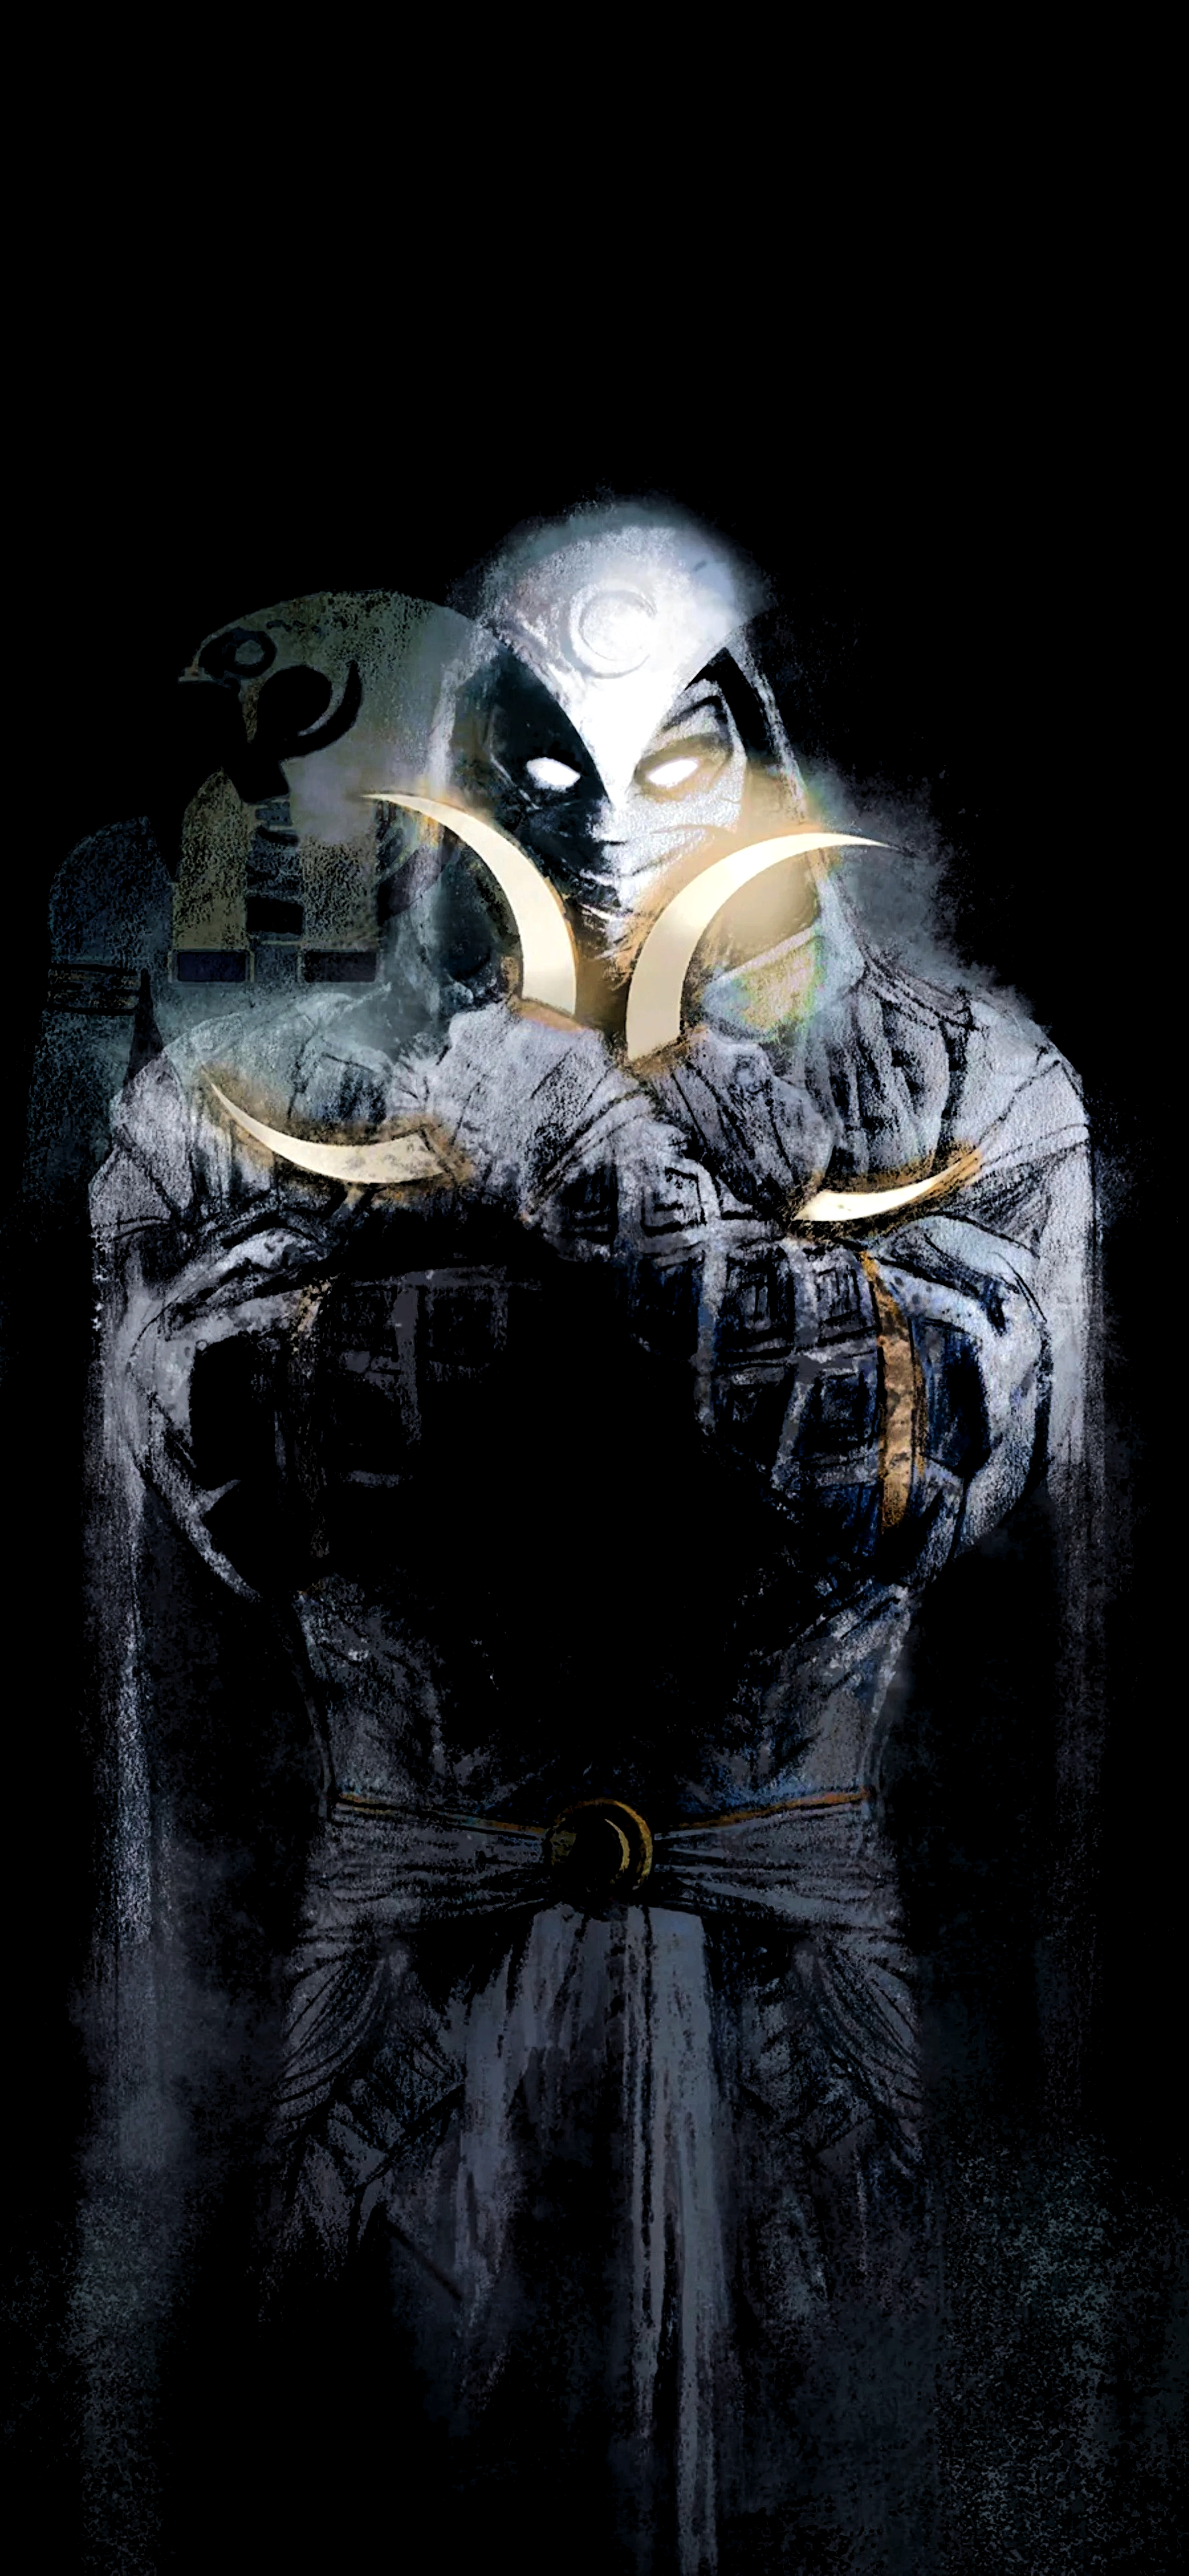 Moon Knight Marvel Superhero 8K Wallpaper 61236